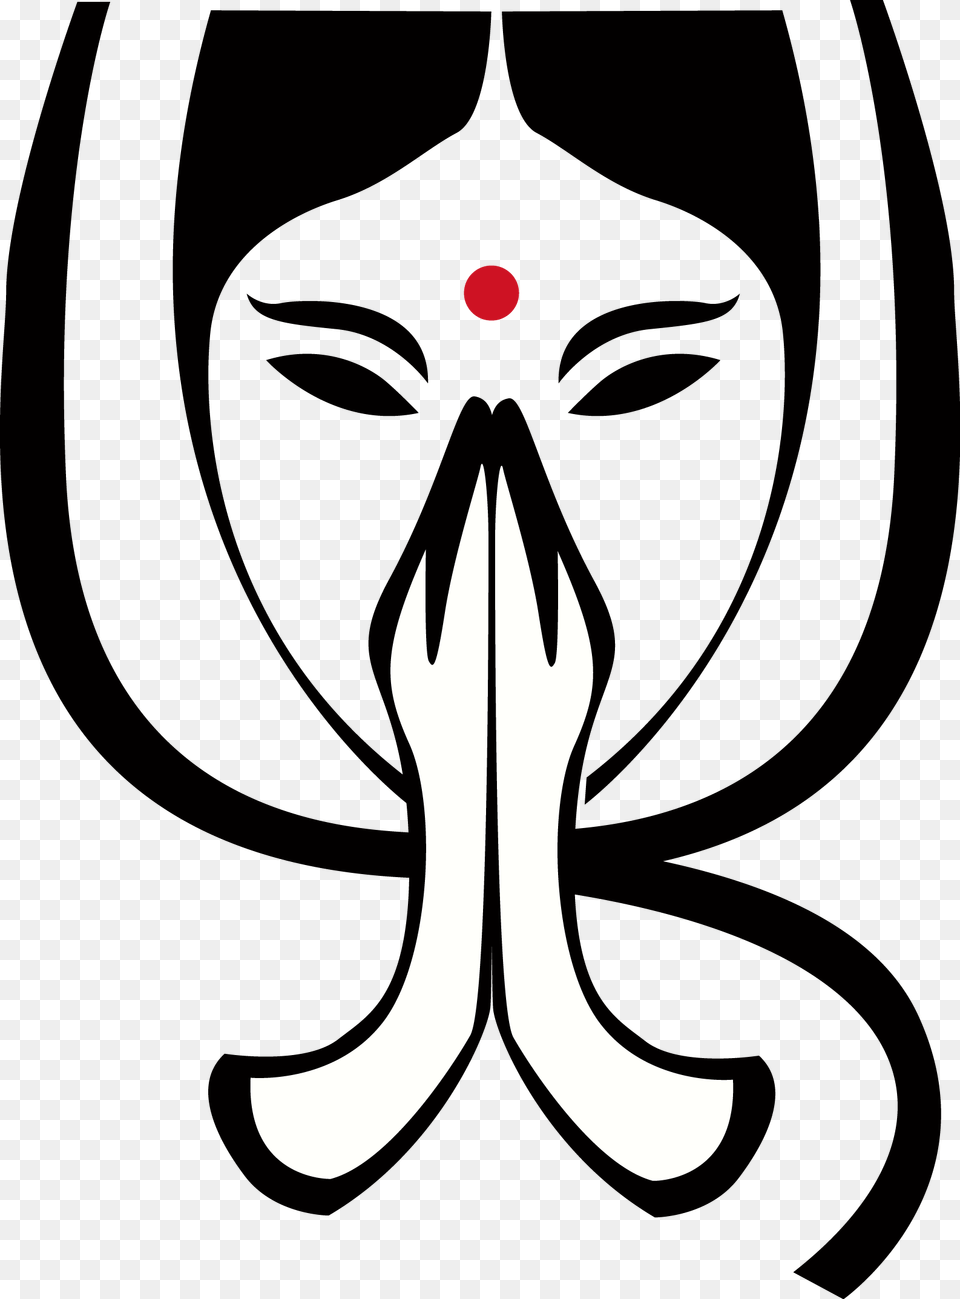 Namaste, Stencil, Symbol Png Image